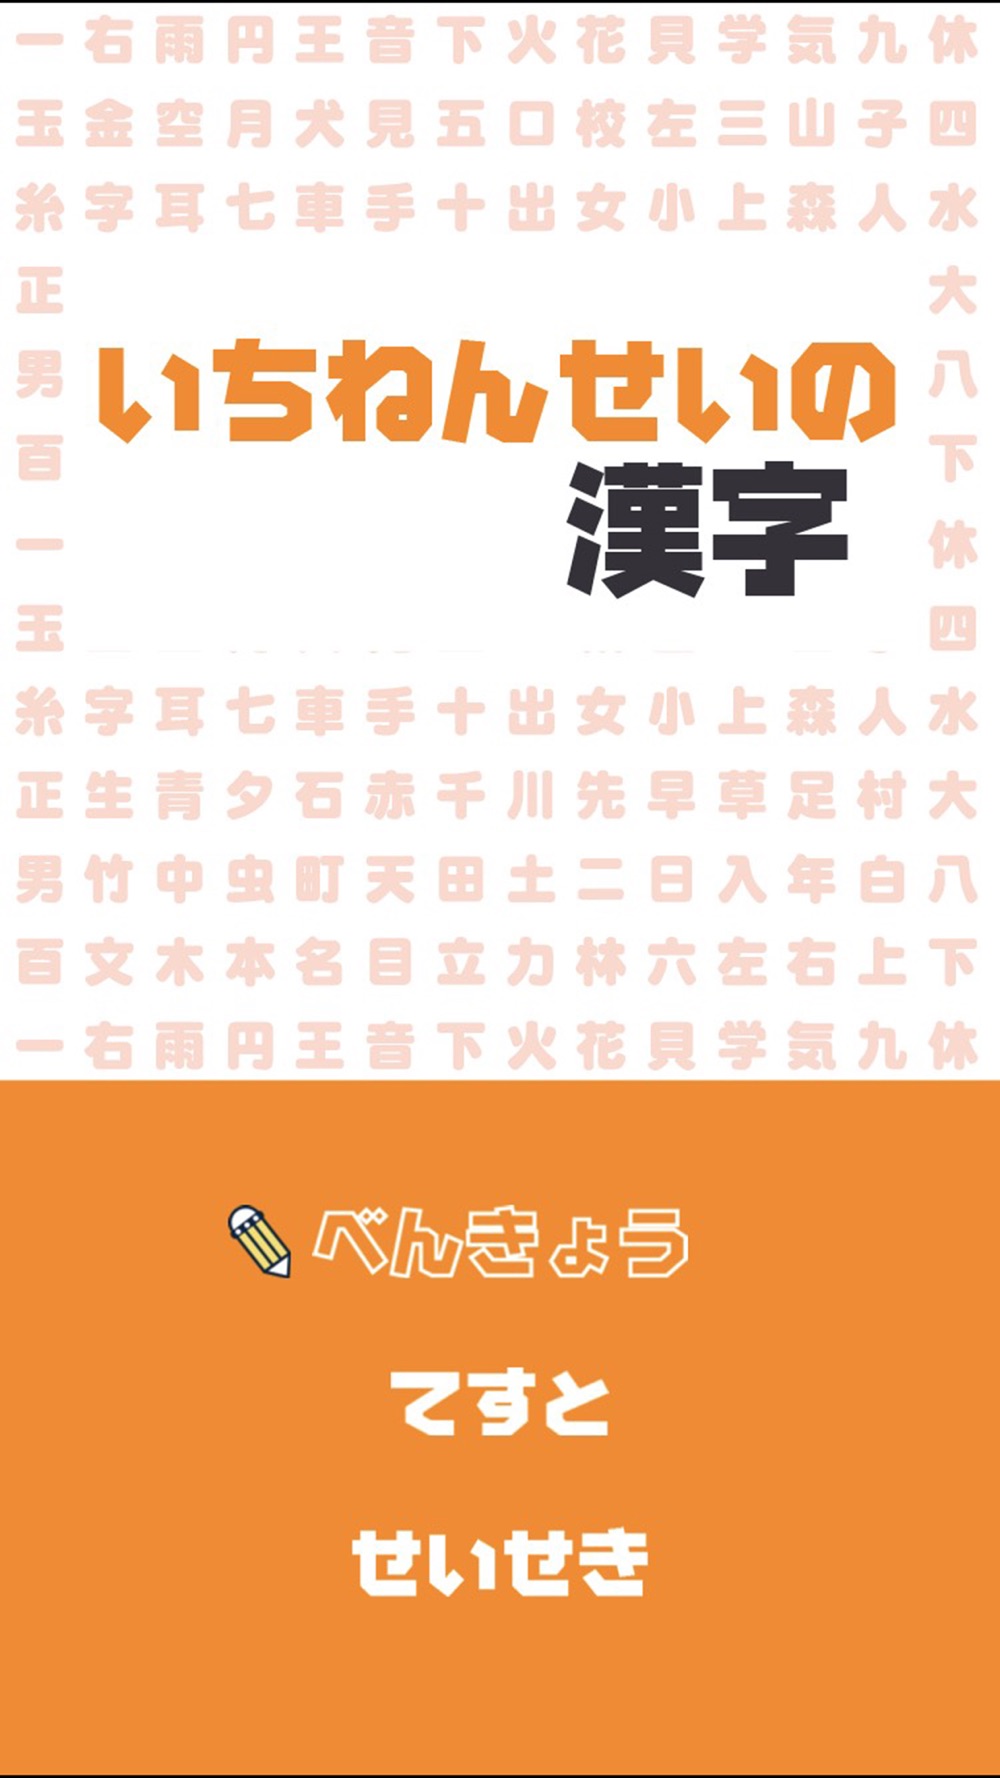 いちねんせいの漢字 小学一年生 小1 向け漢字勉強アプリ Free Download App For Iphone Steprimo Com